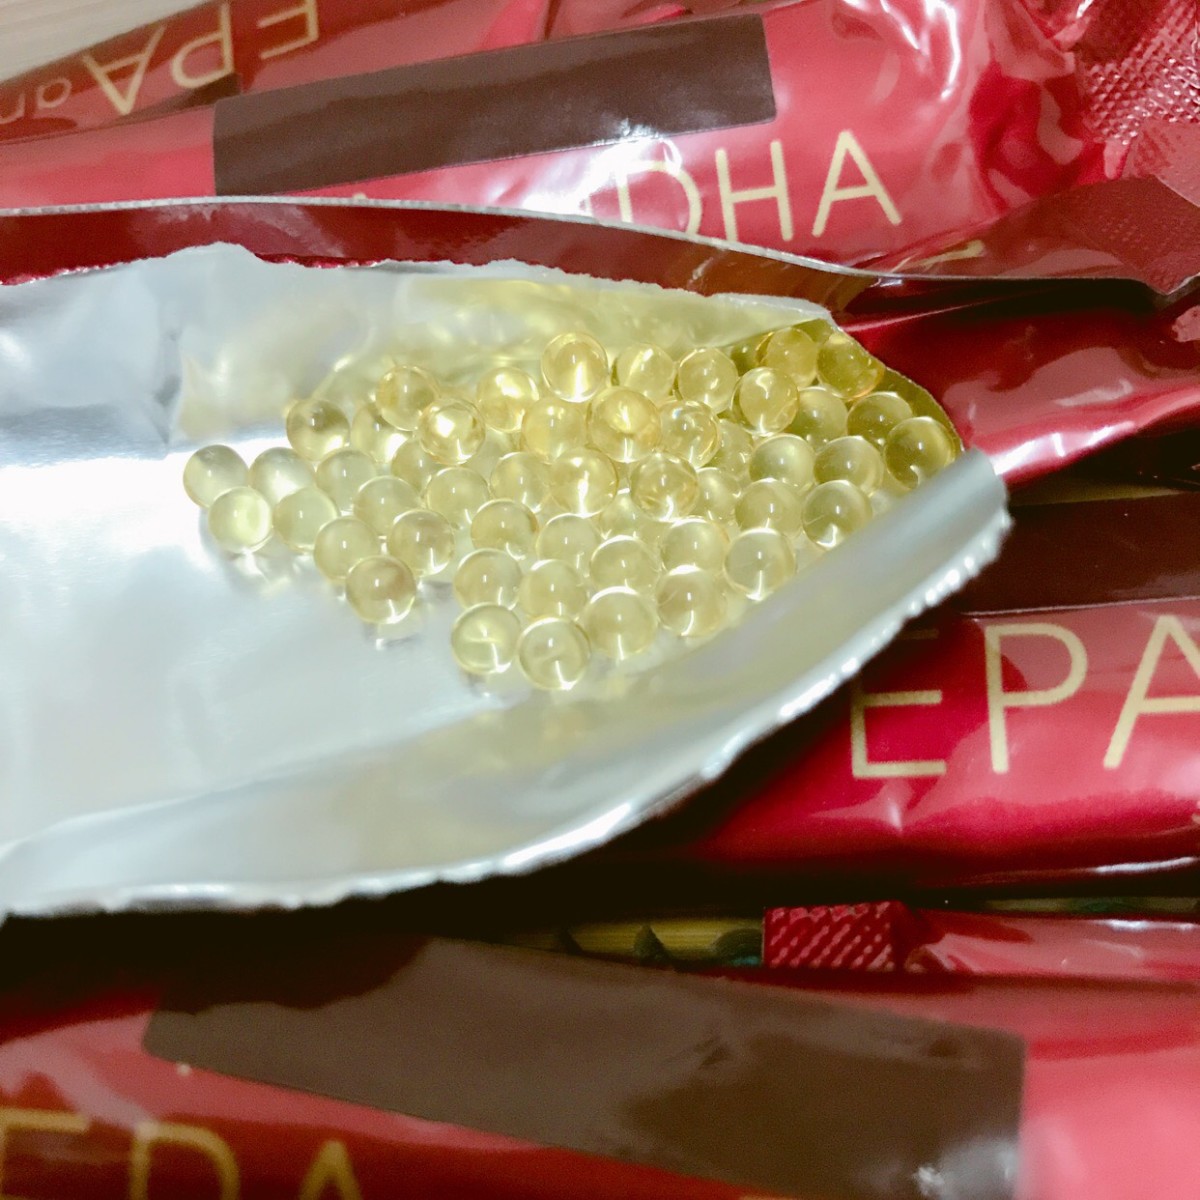 日本水產NISSUI EPA&DHA海洋精萃魚油晶球 富含深海魚萃取的EPA&DHA，4mm極小膠囊，易吃無腥味 保養品分享 健康養身 民生資訊分享 飲食集錦  